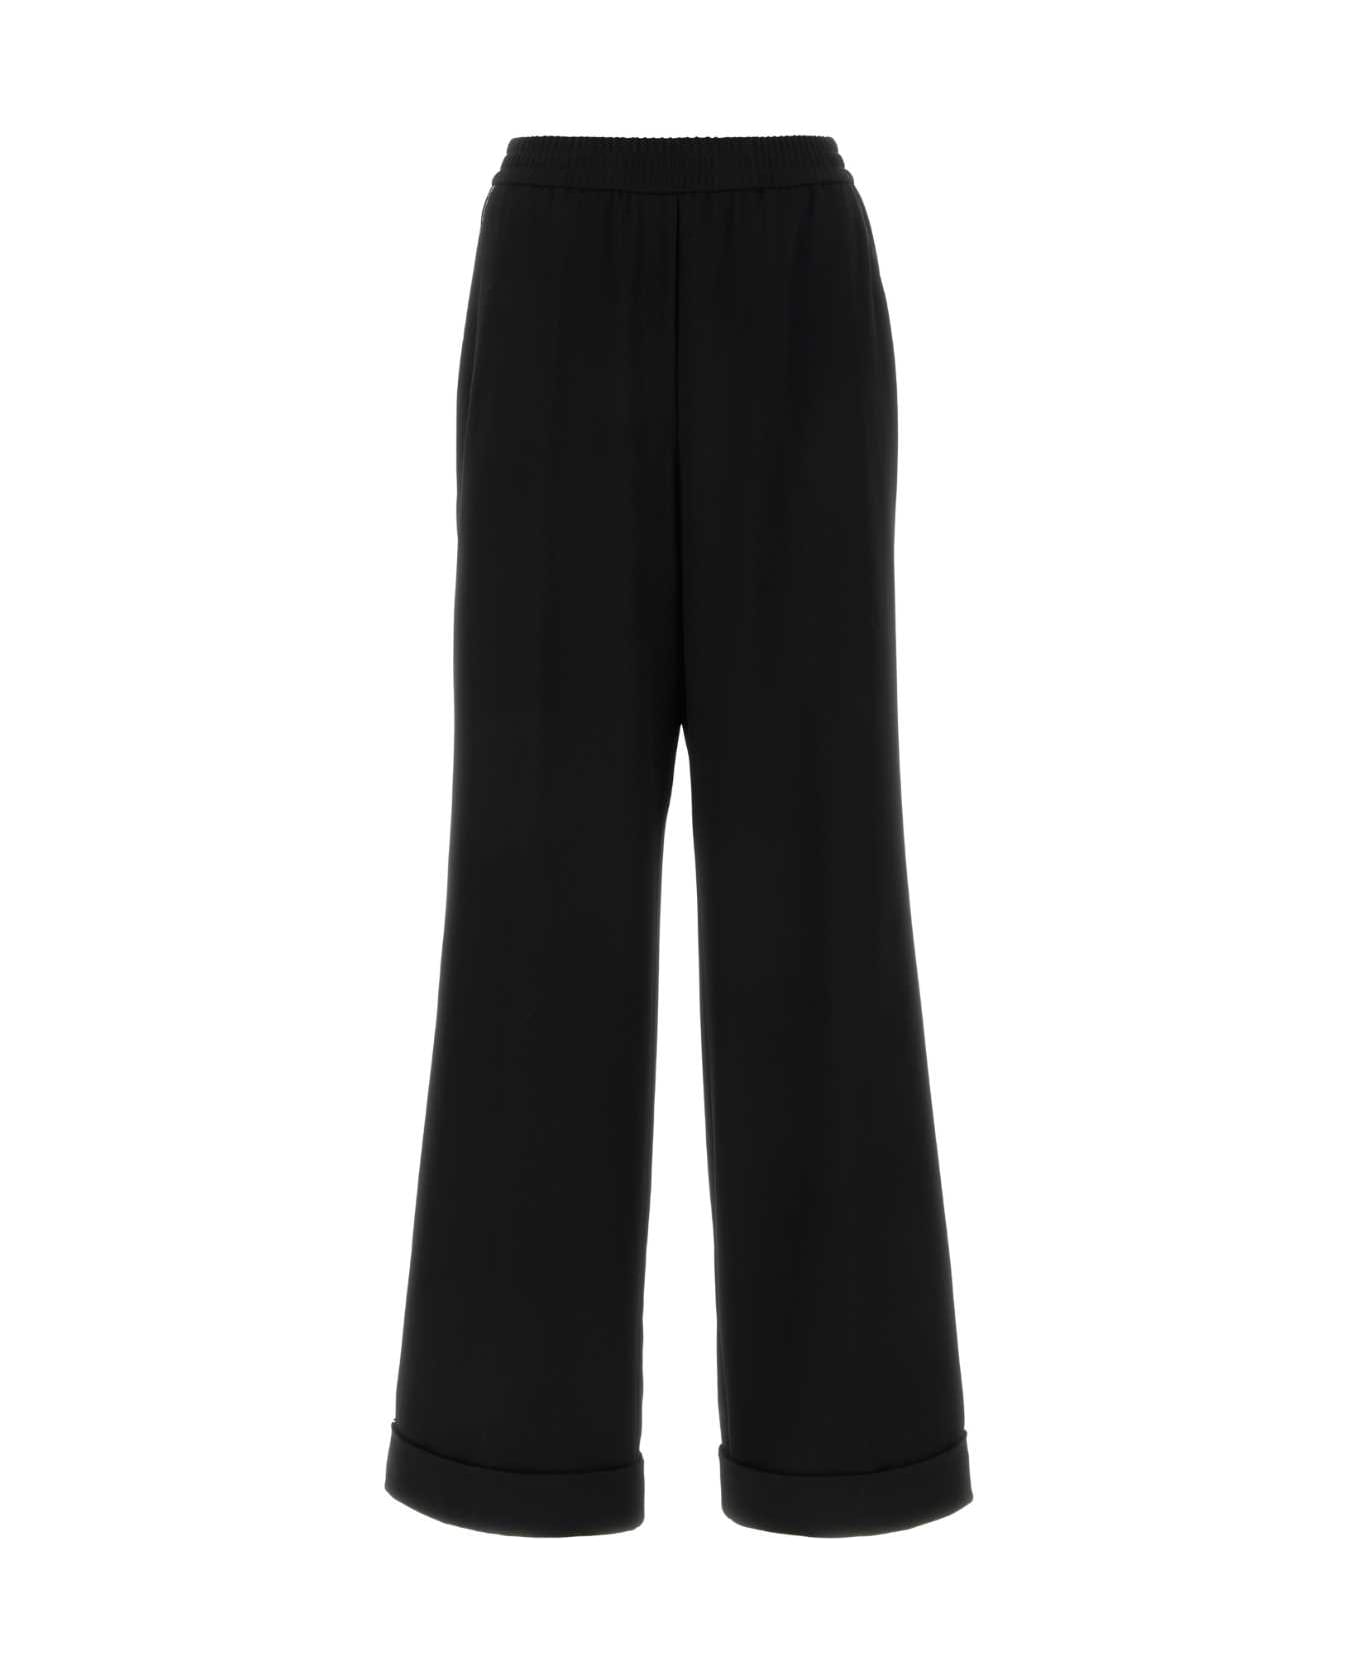 Dolce & Gabbana Black Stretch Wool Pajamas Pant - NERO ボトムス